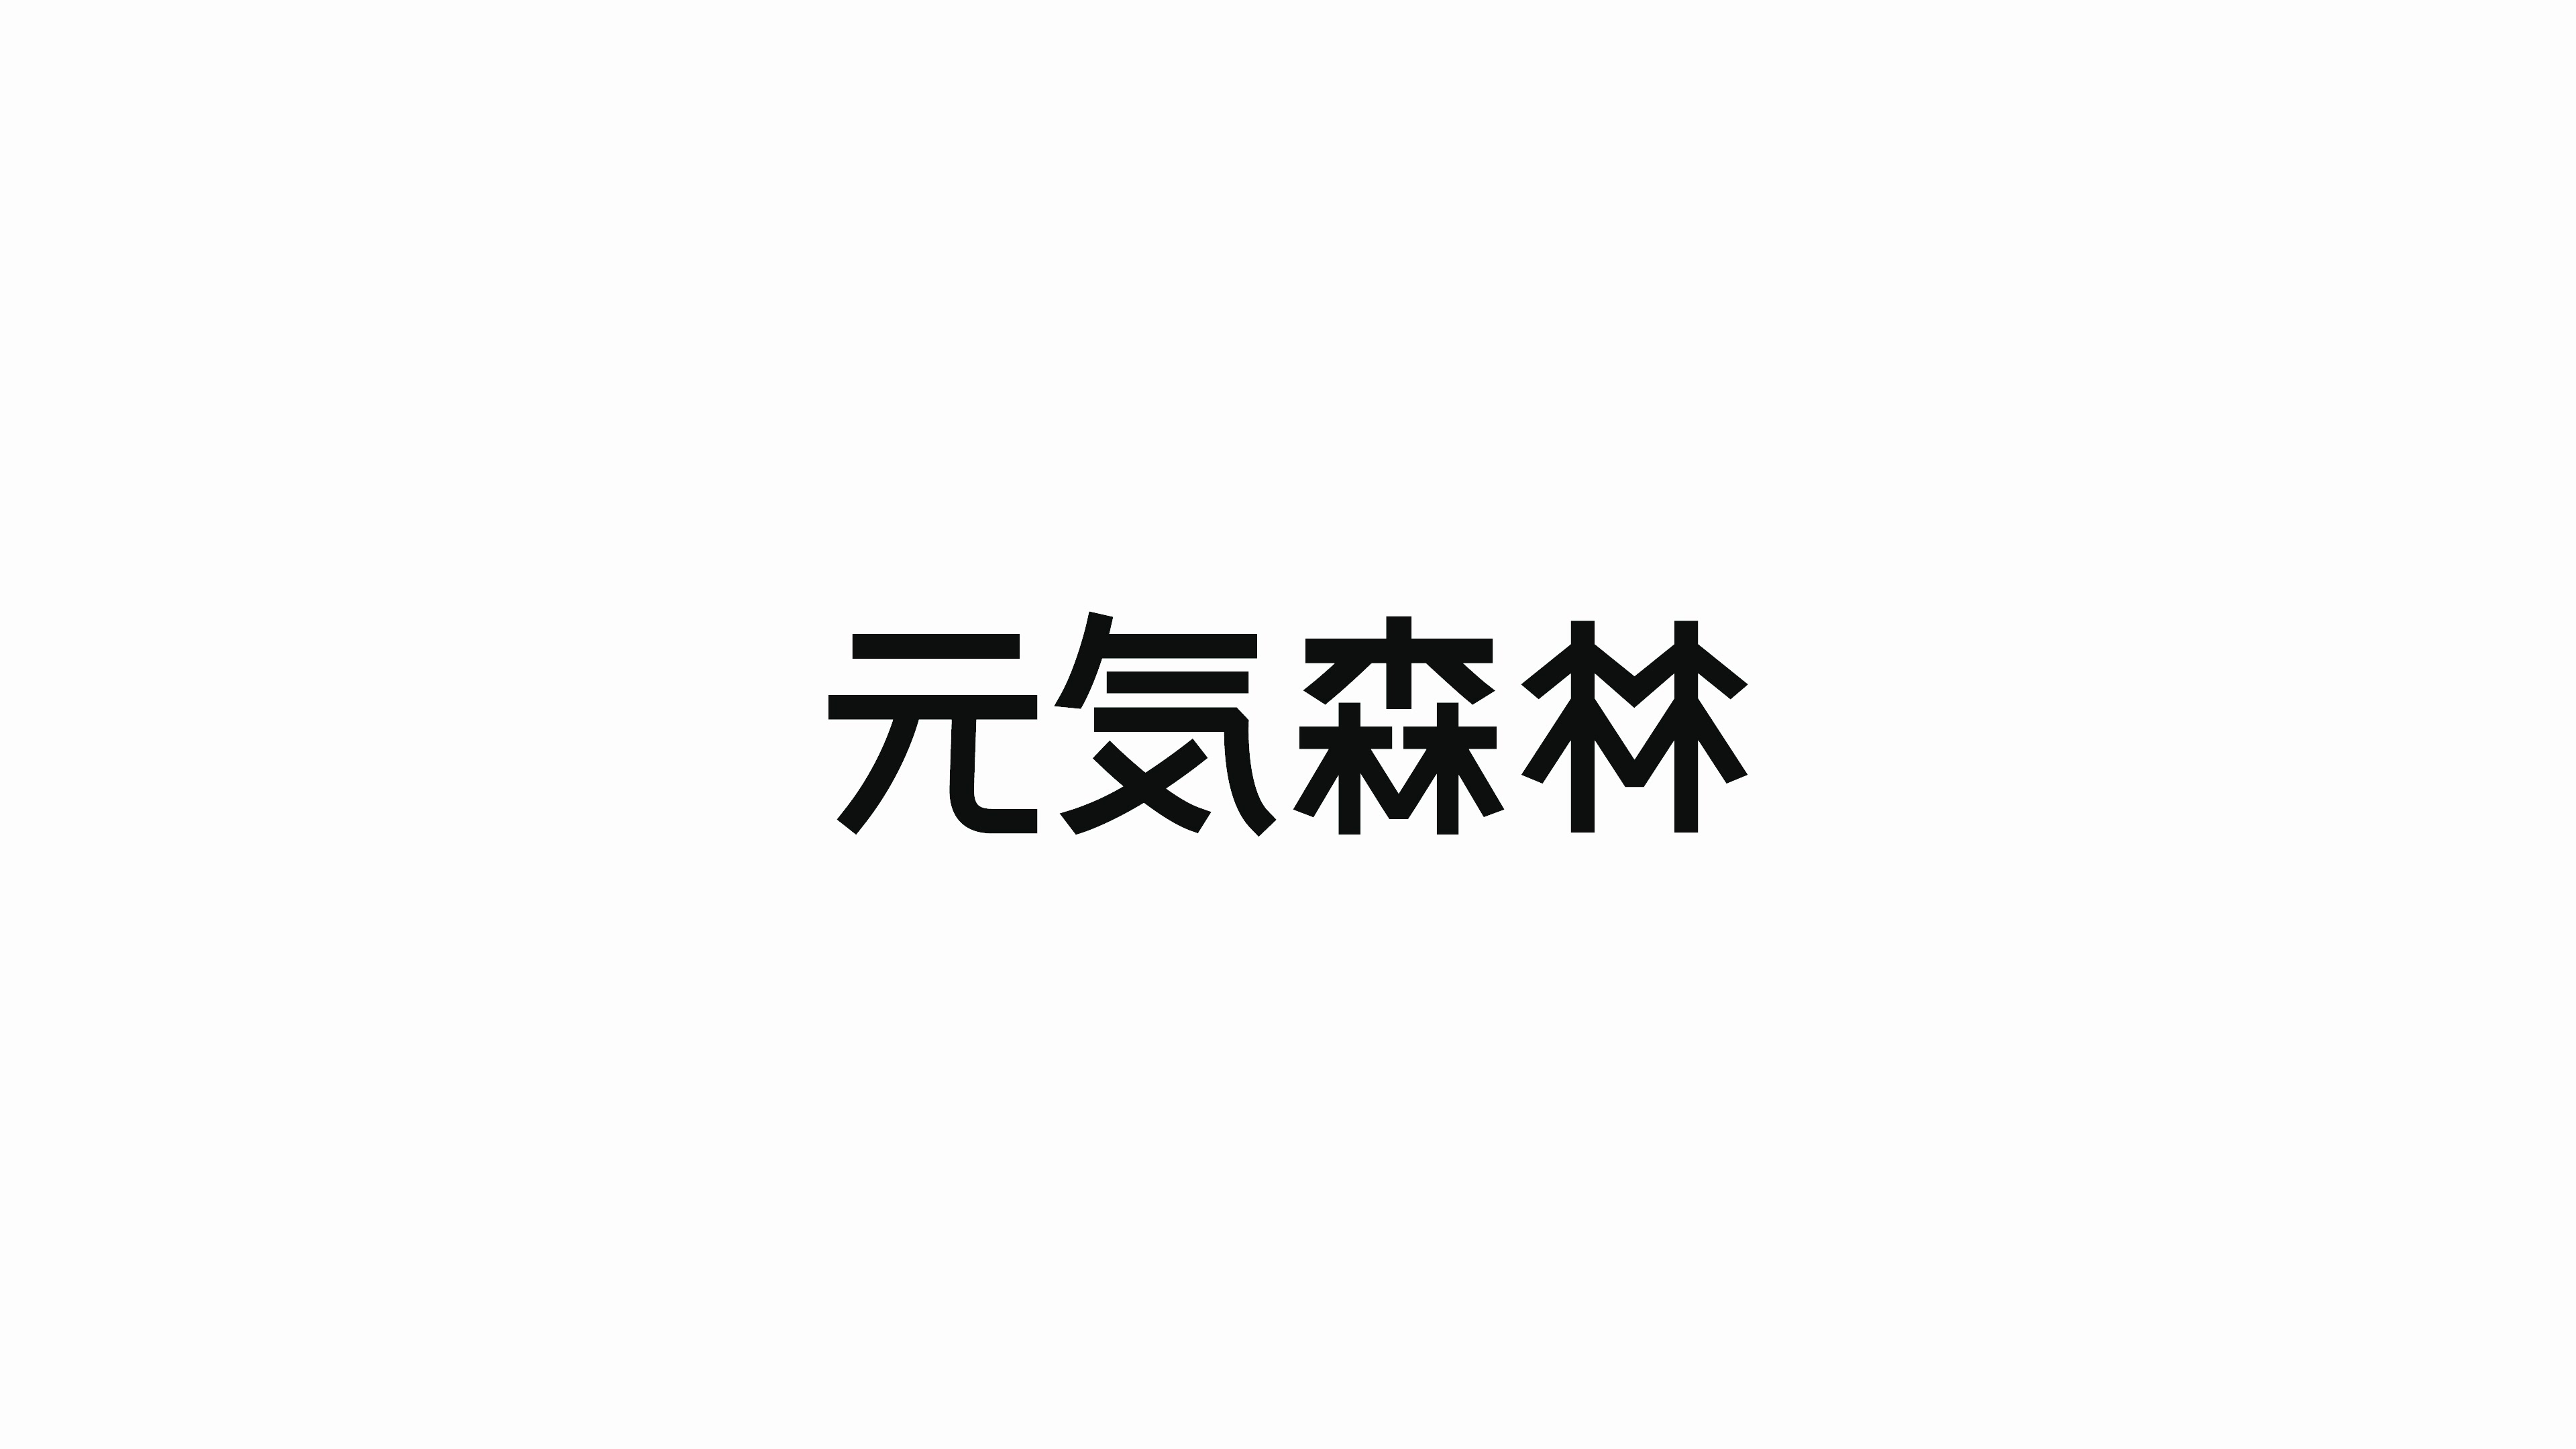 元气森林logo字体图片